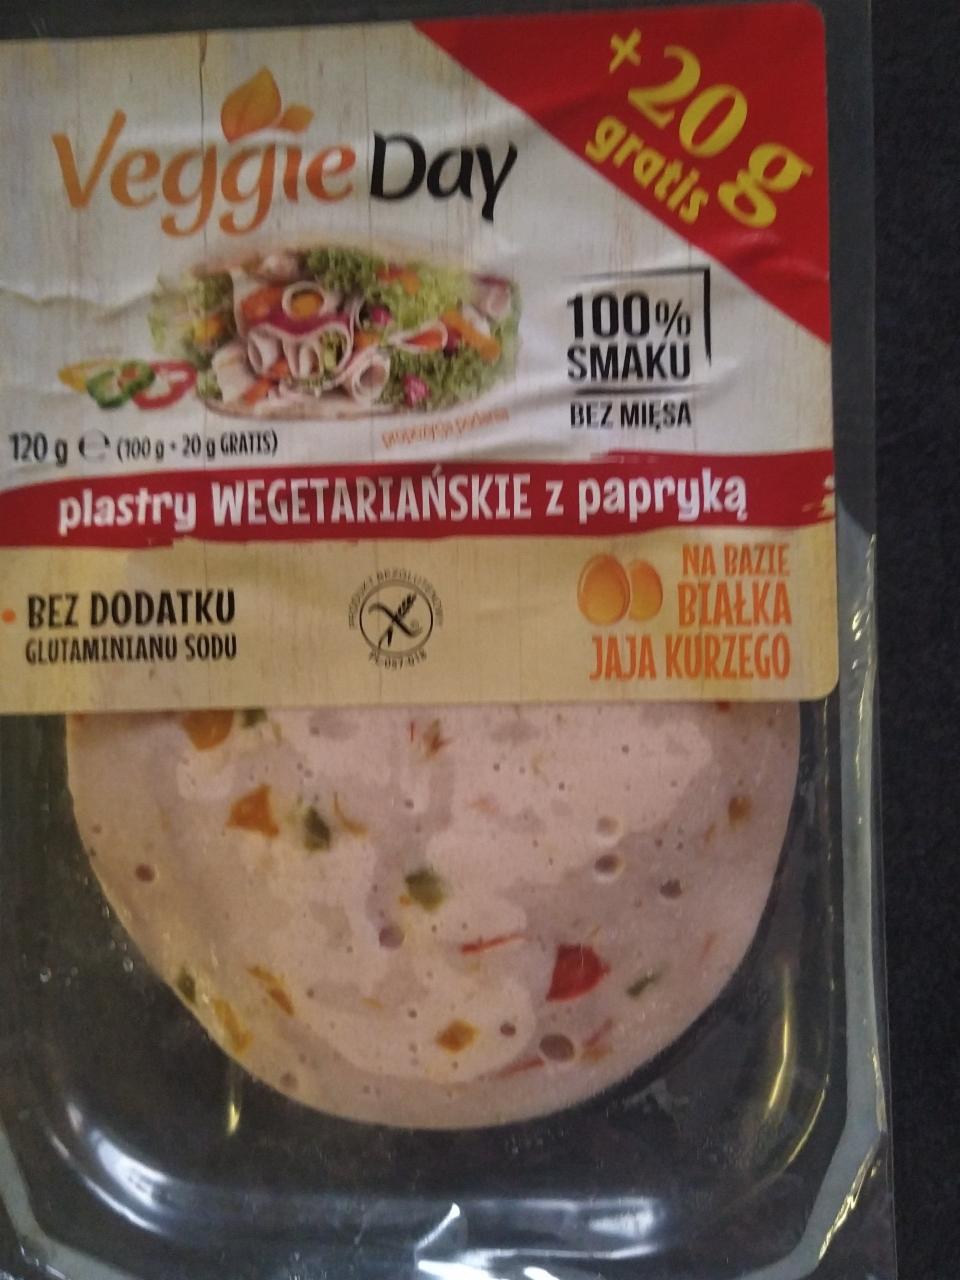 Zdjęcia - Plastry wegetariańskie z papryką VeggieDay